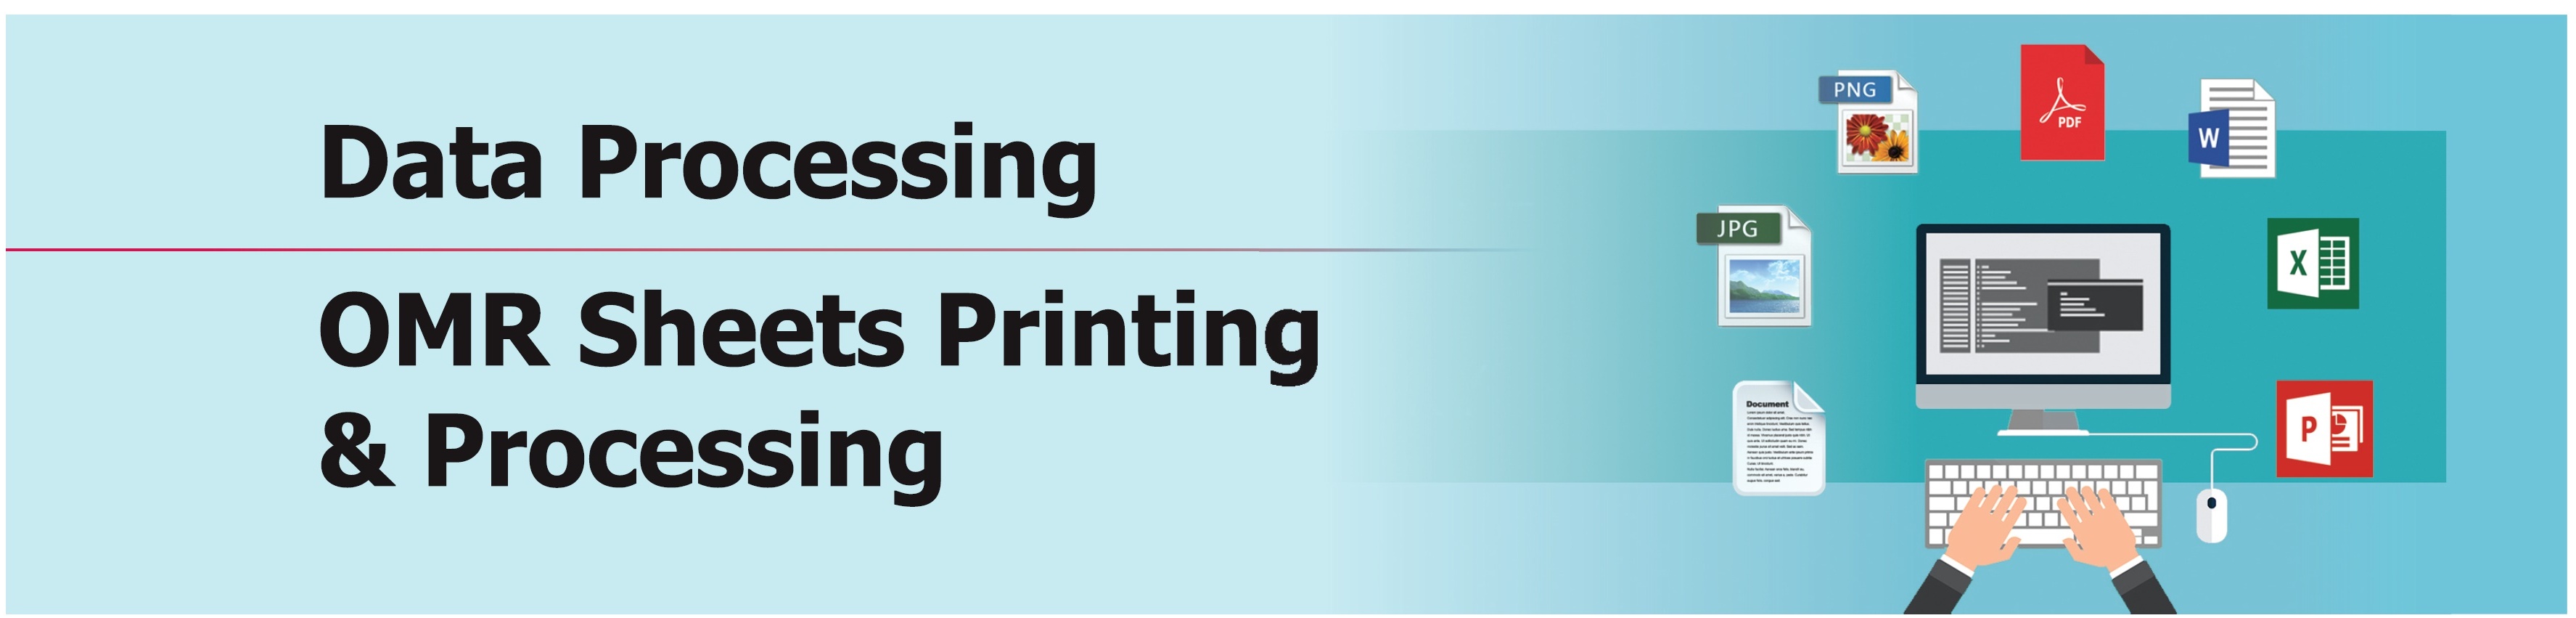 OMR Sheets Printing and Processing